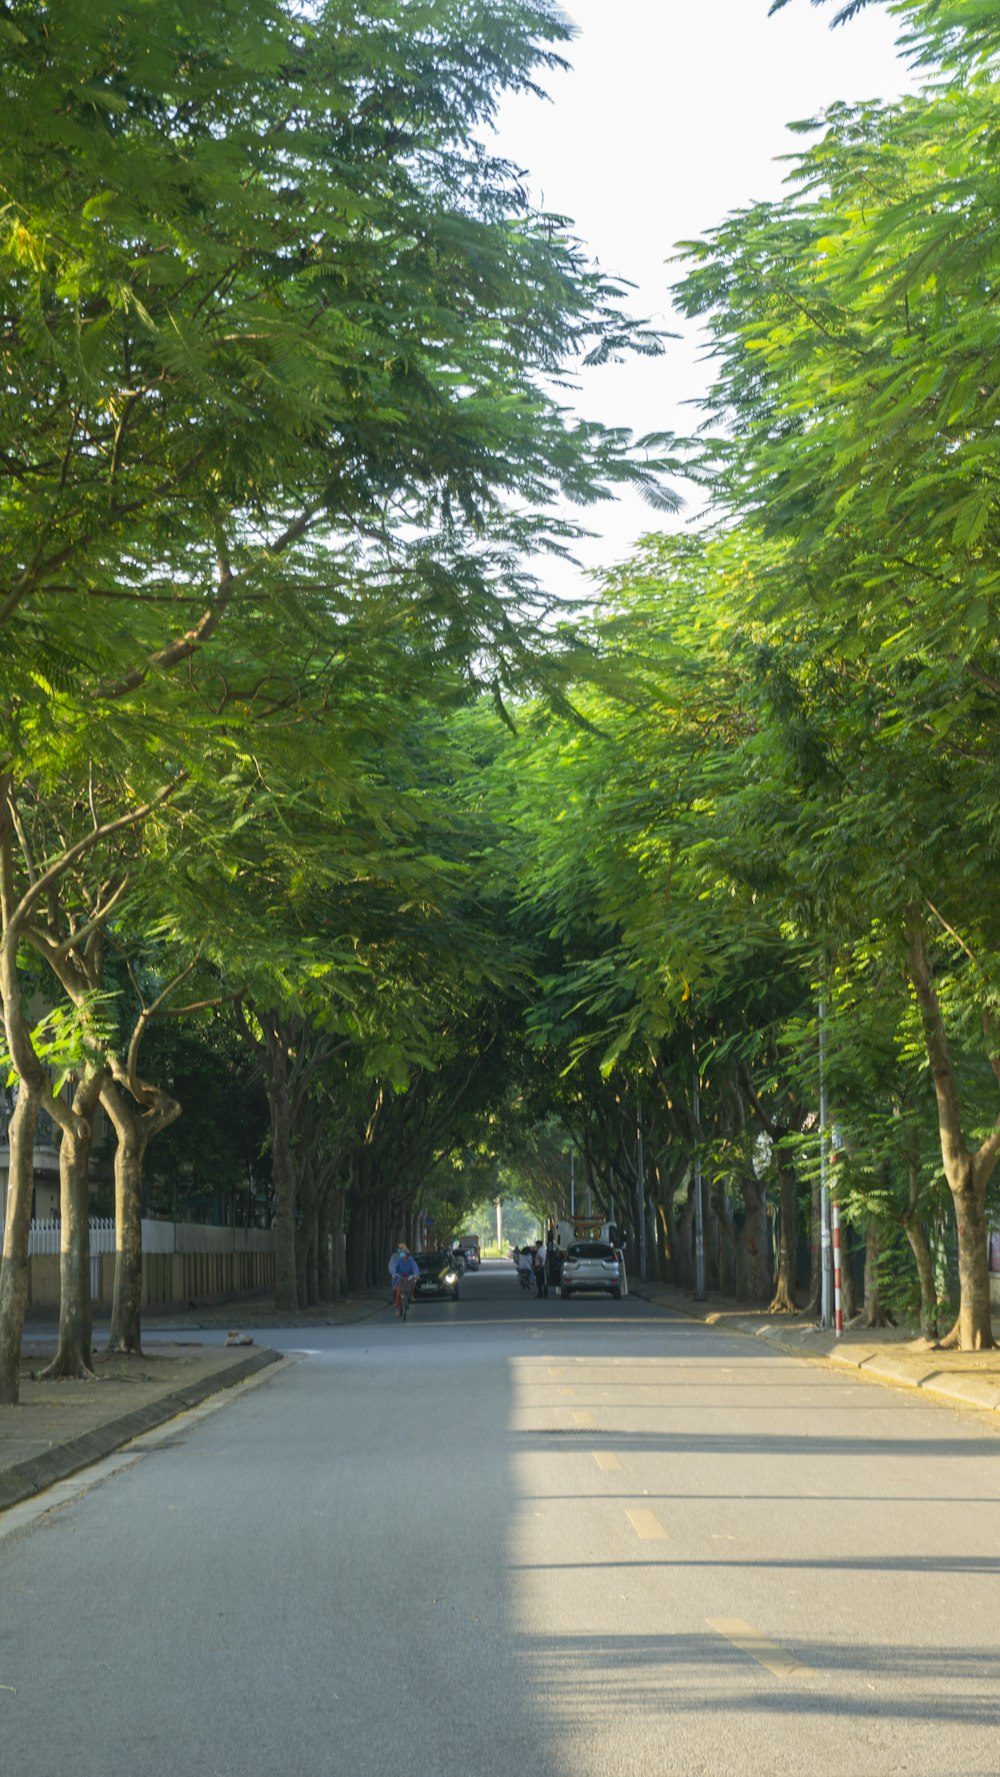 Una strada fiancheggiata da molti alberi verdi